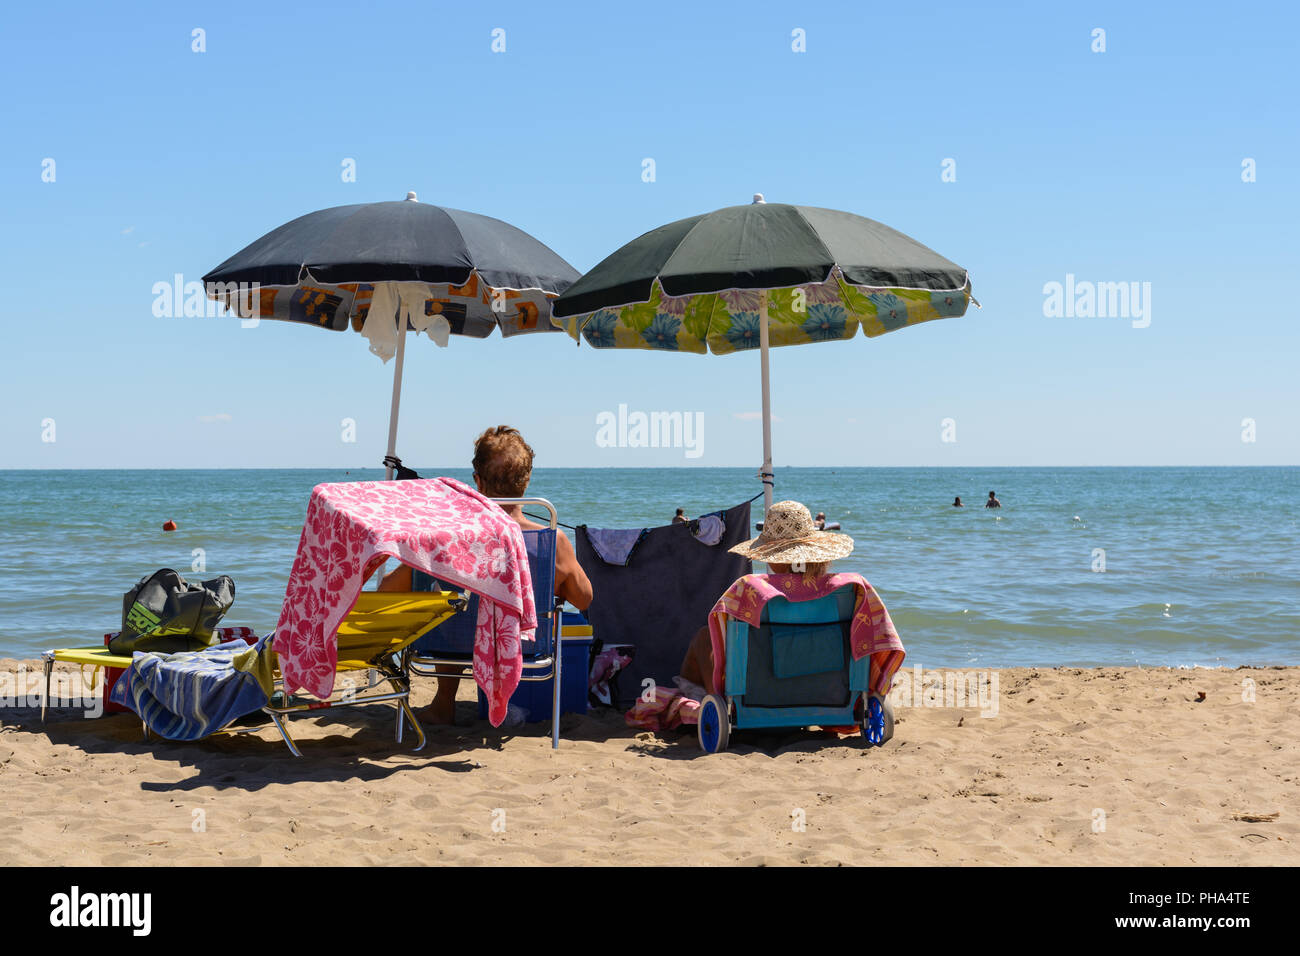 Deux baigneurs profiter de la plage de sable fin sous le parapluie Banque D'Images